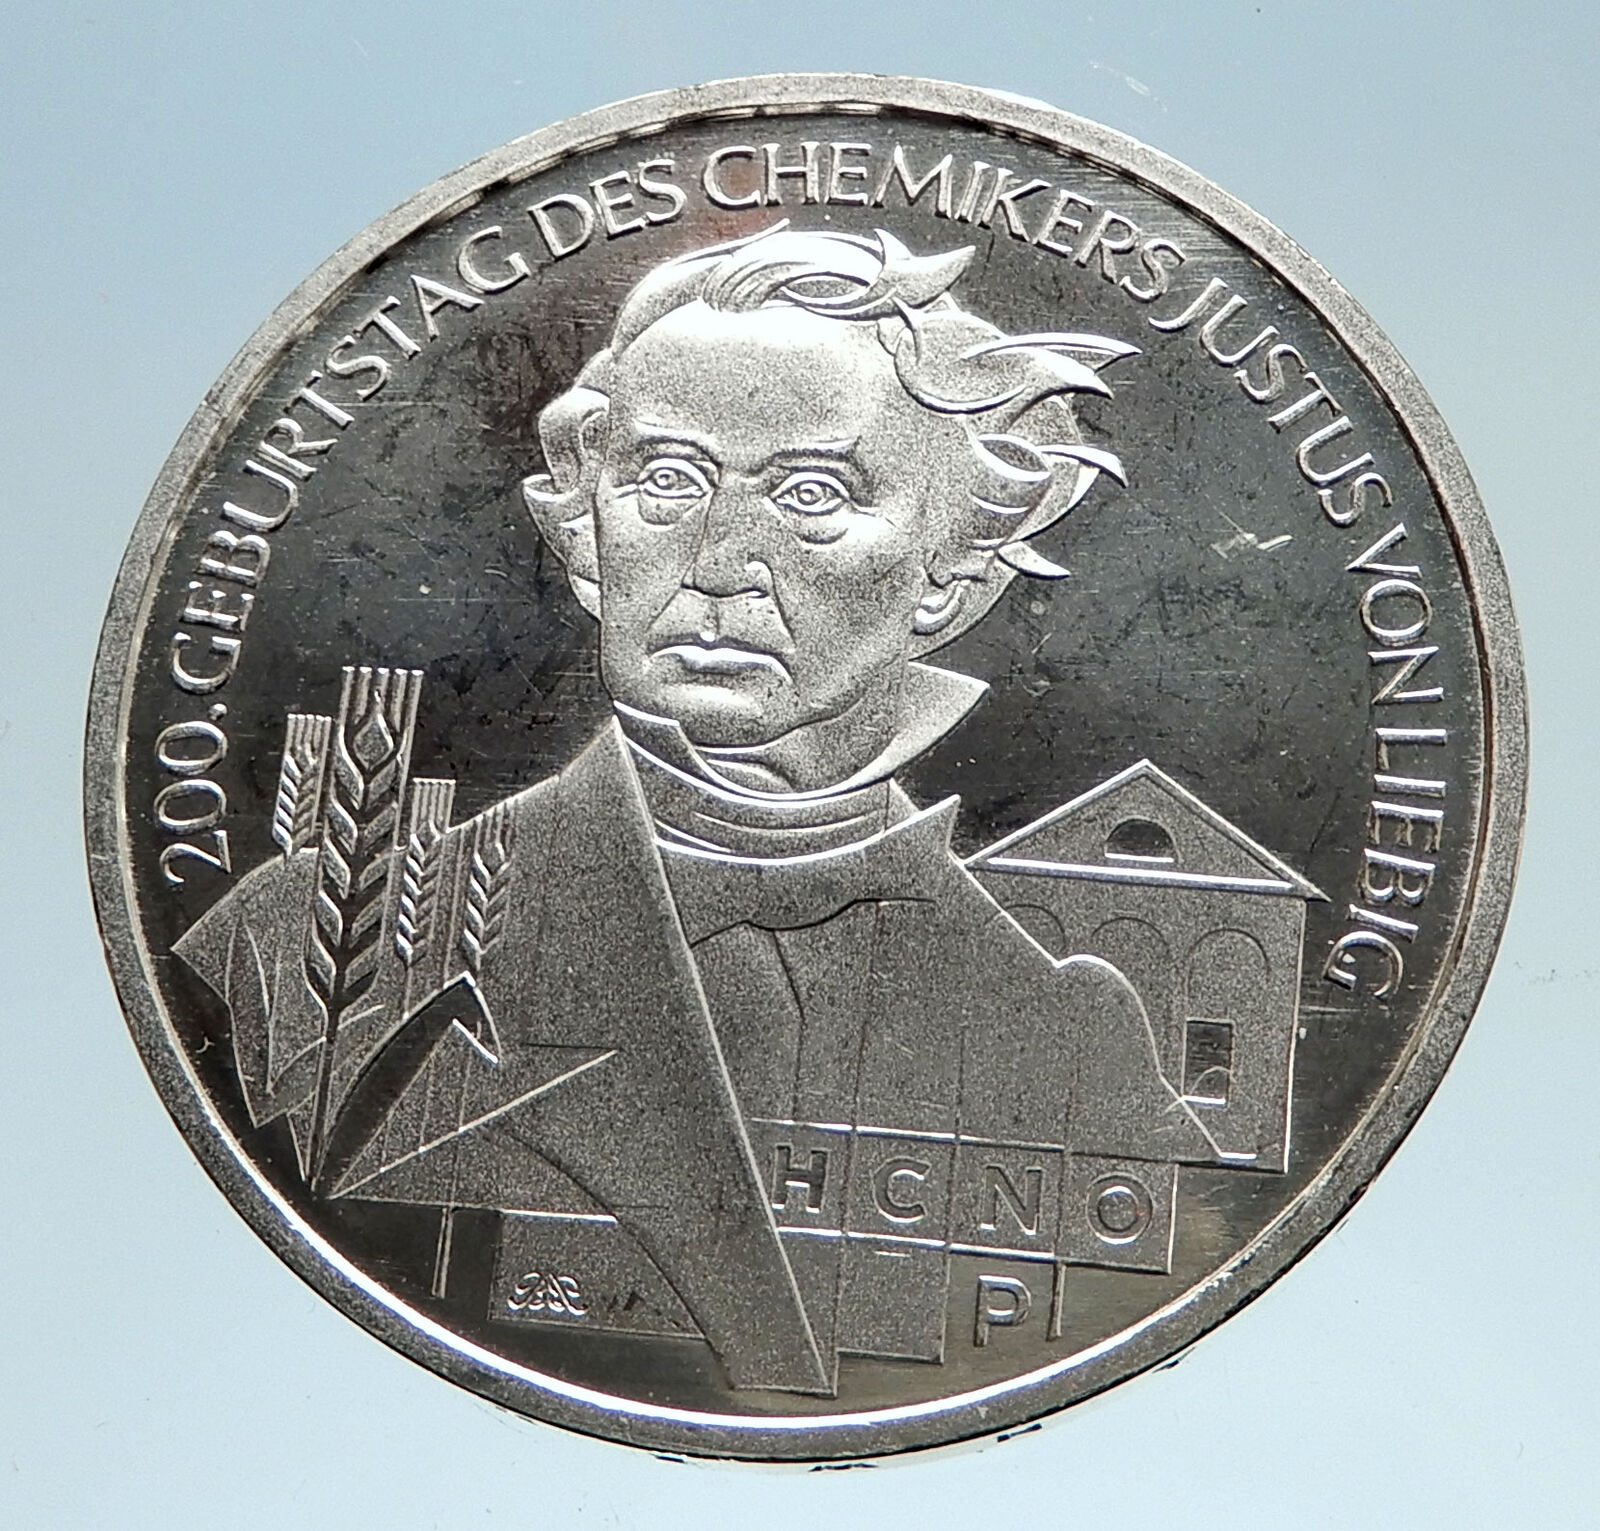 2003 GERMANY Chemist Justus von Liebig Genuine Proof Silver German Coin i75020